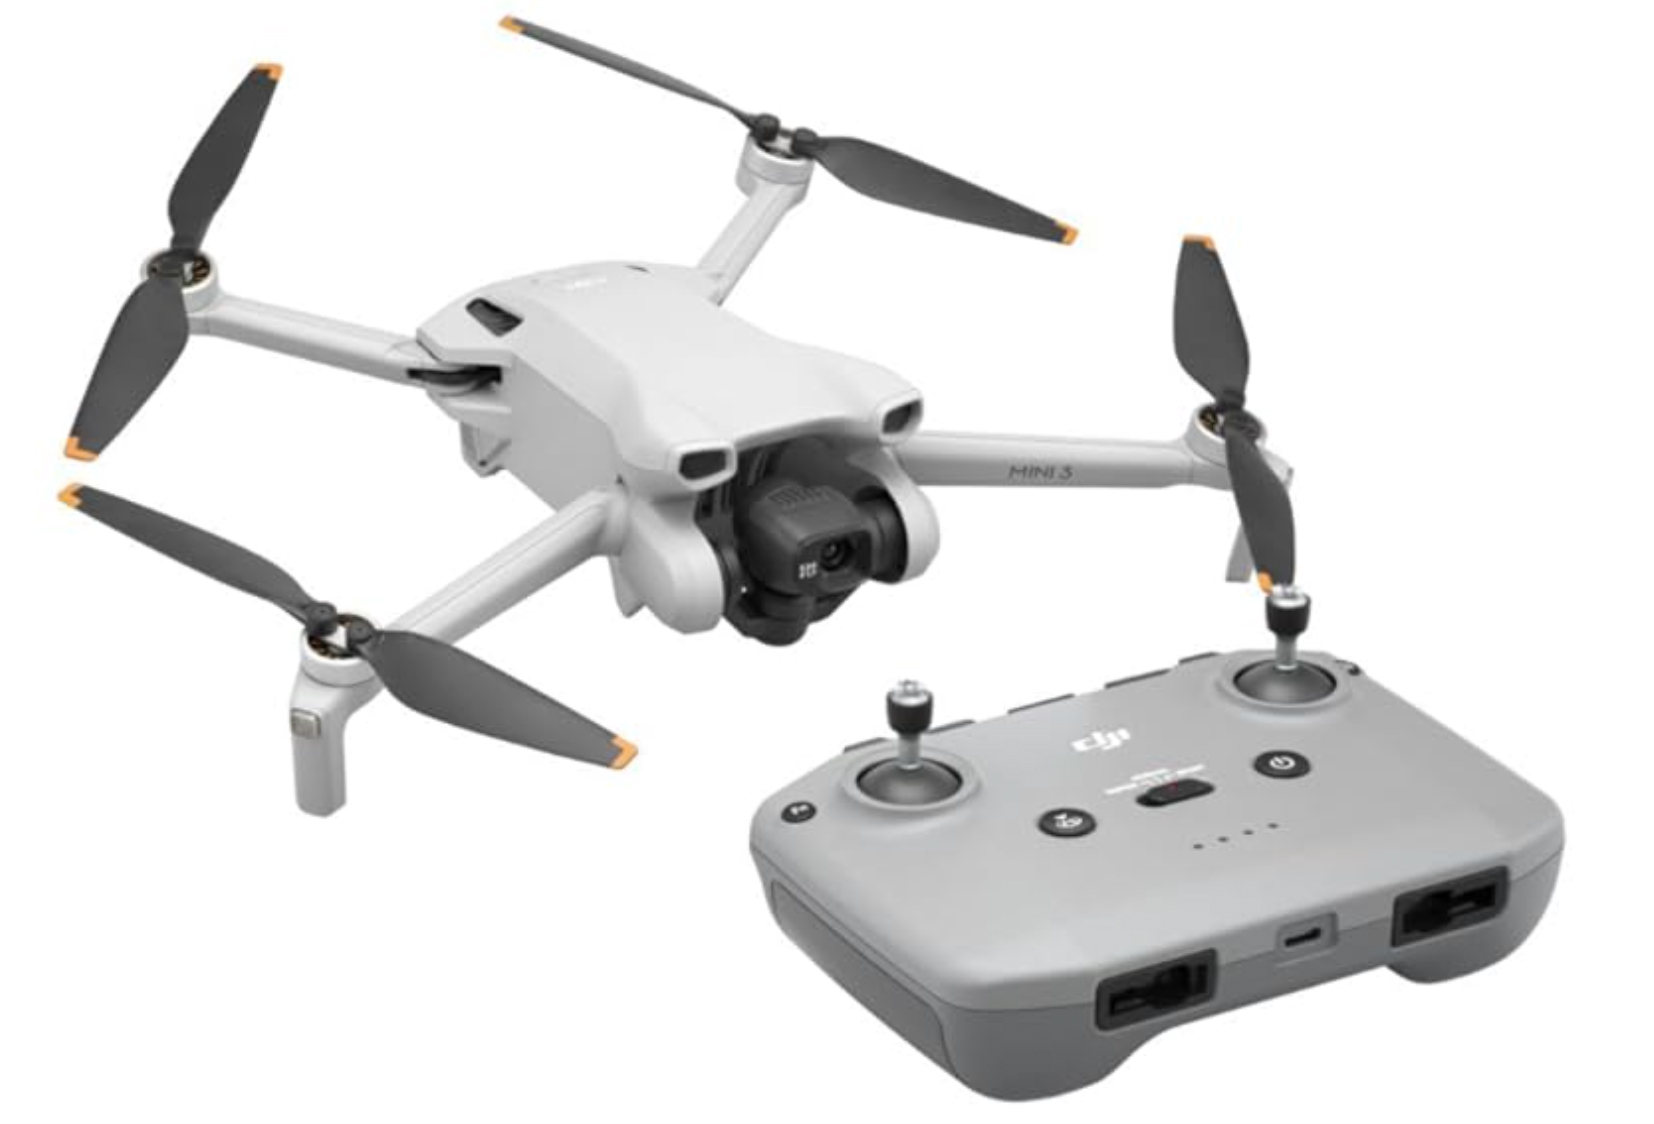 DJI Mini 3 drone and remote controller